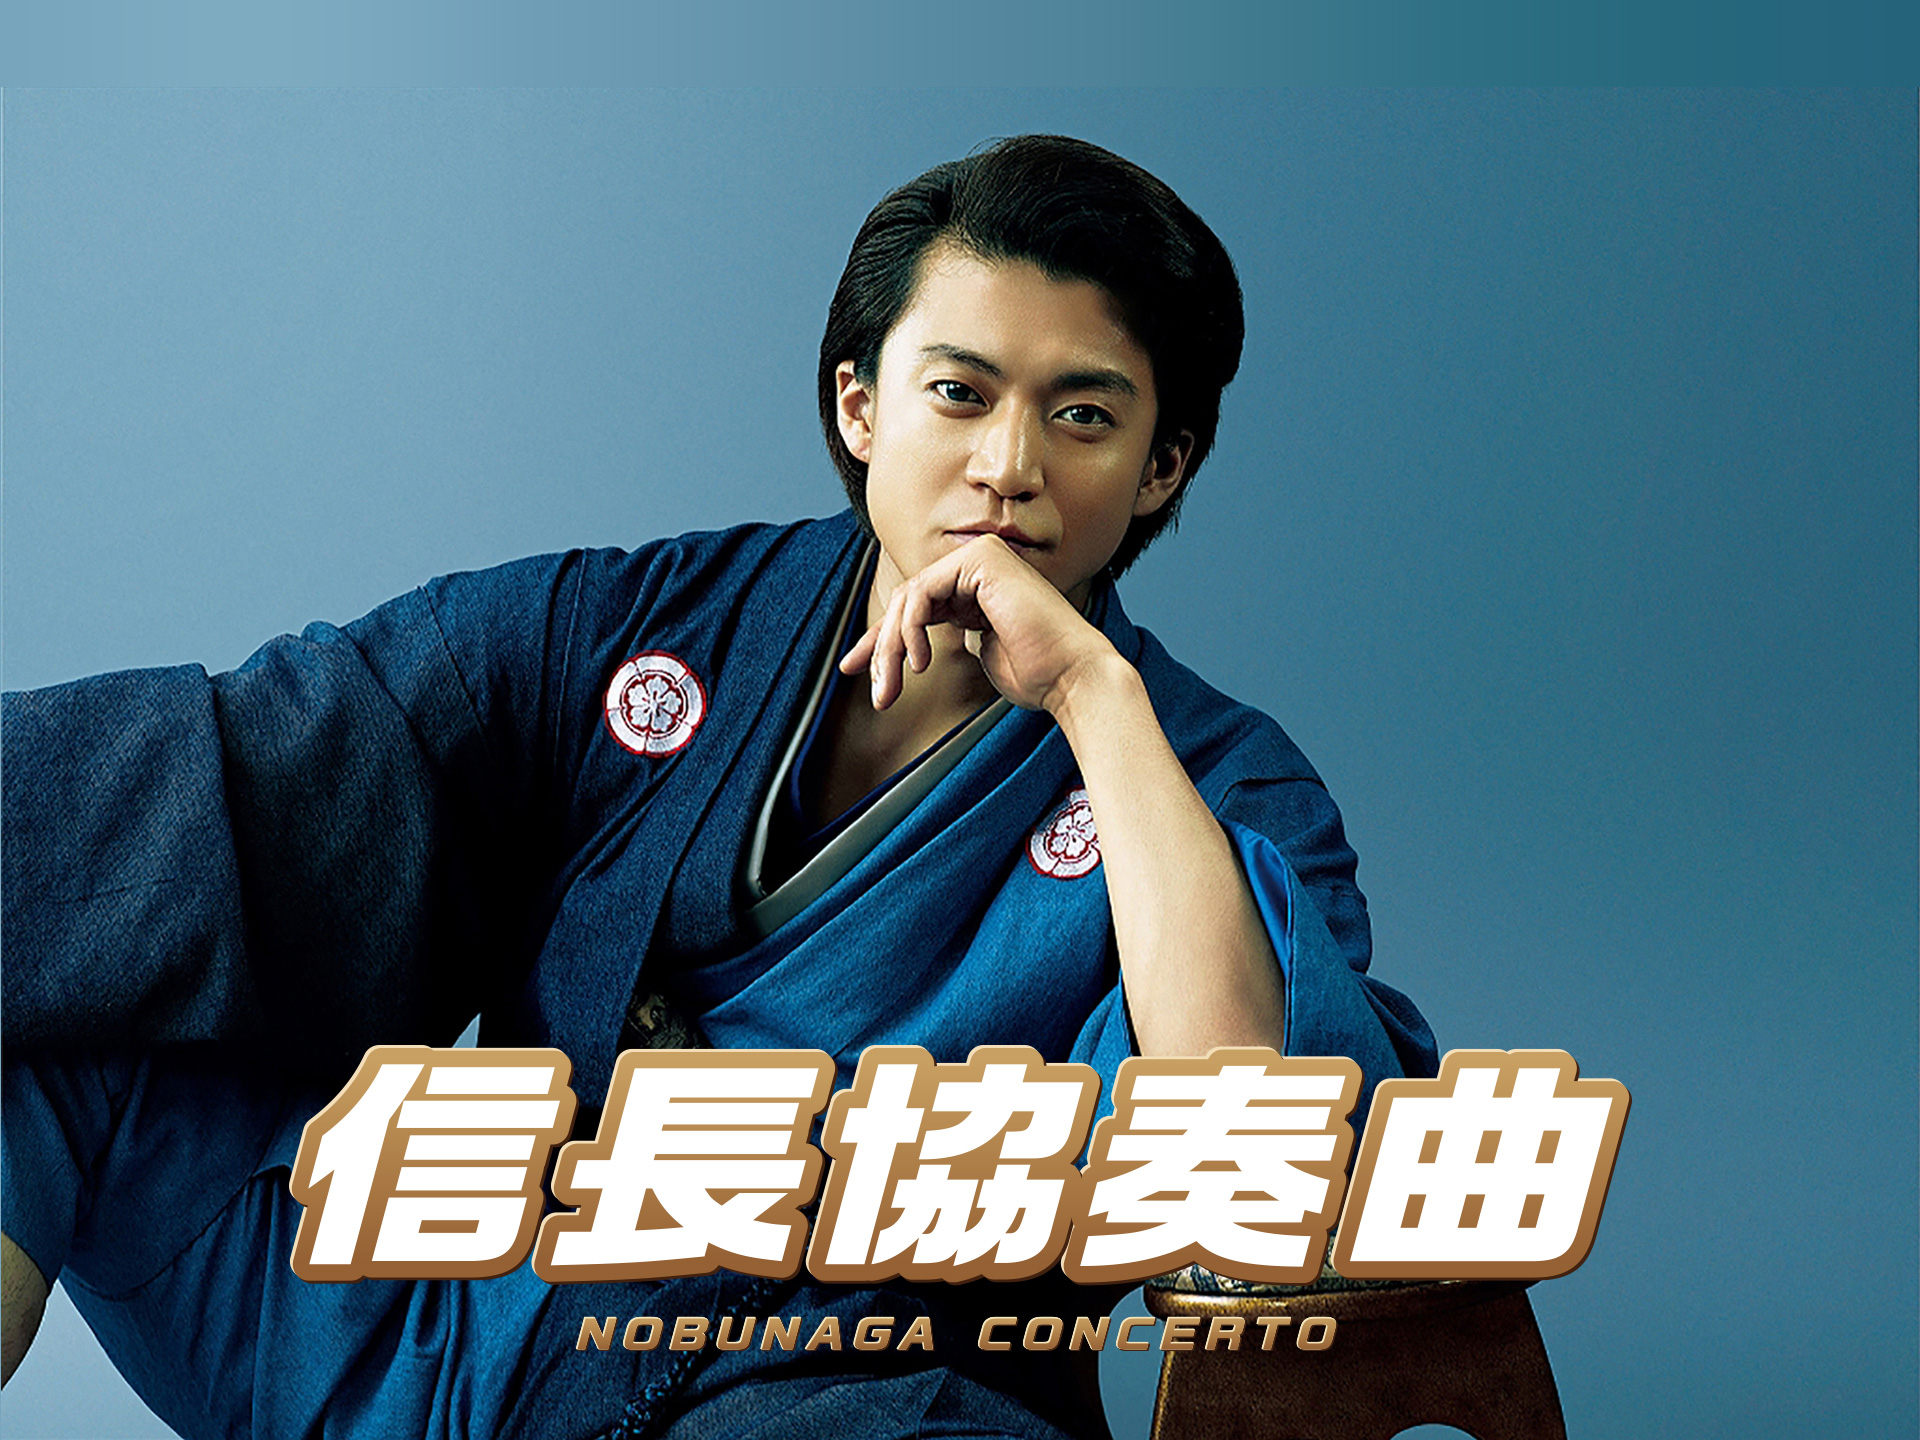 無料視聴あり 映画 映画 信長協奏曲 Nobunaga Concerto の動画 初月無料 動画配信サービスのビデオマーケット